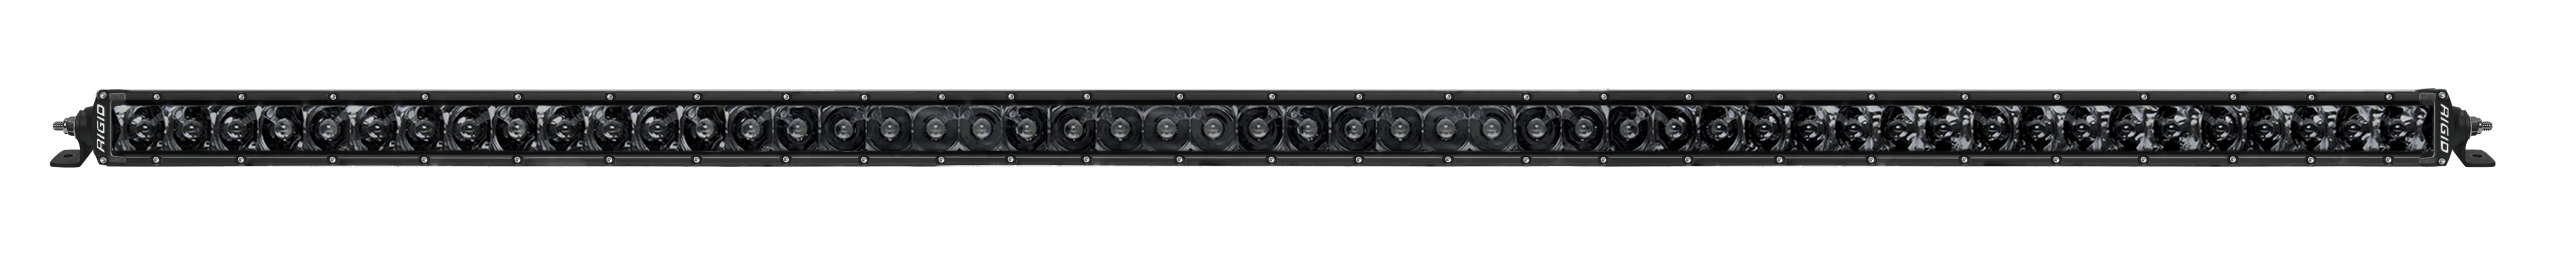 50 Inch Spot Midnight SR-Series Pro RIGID Lighting 950214BLK